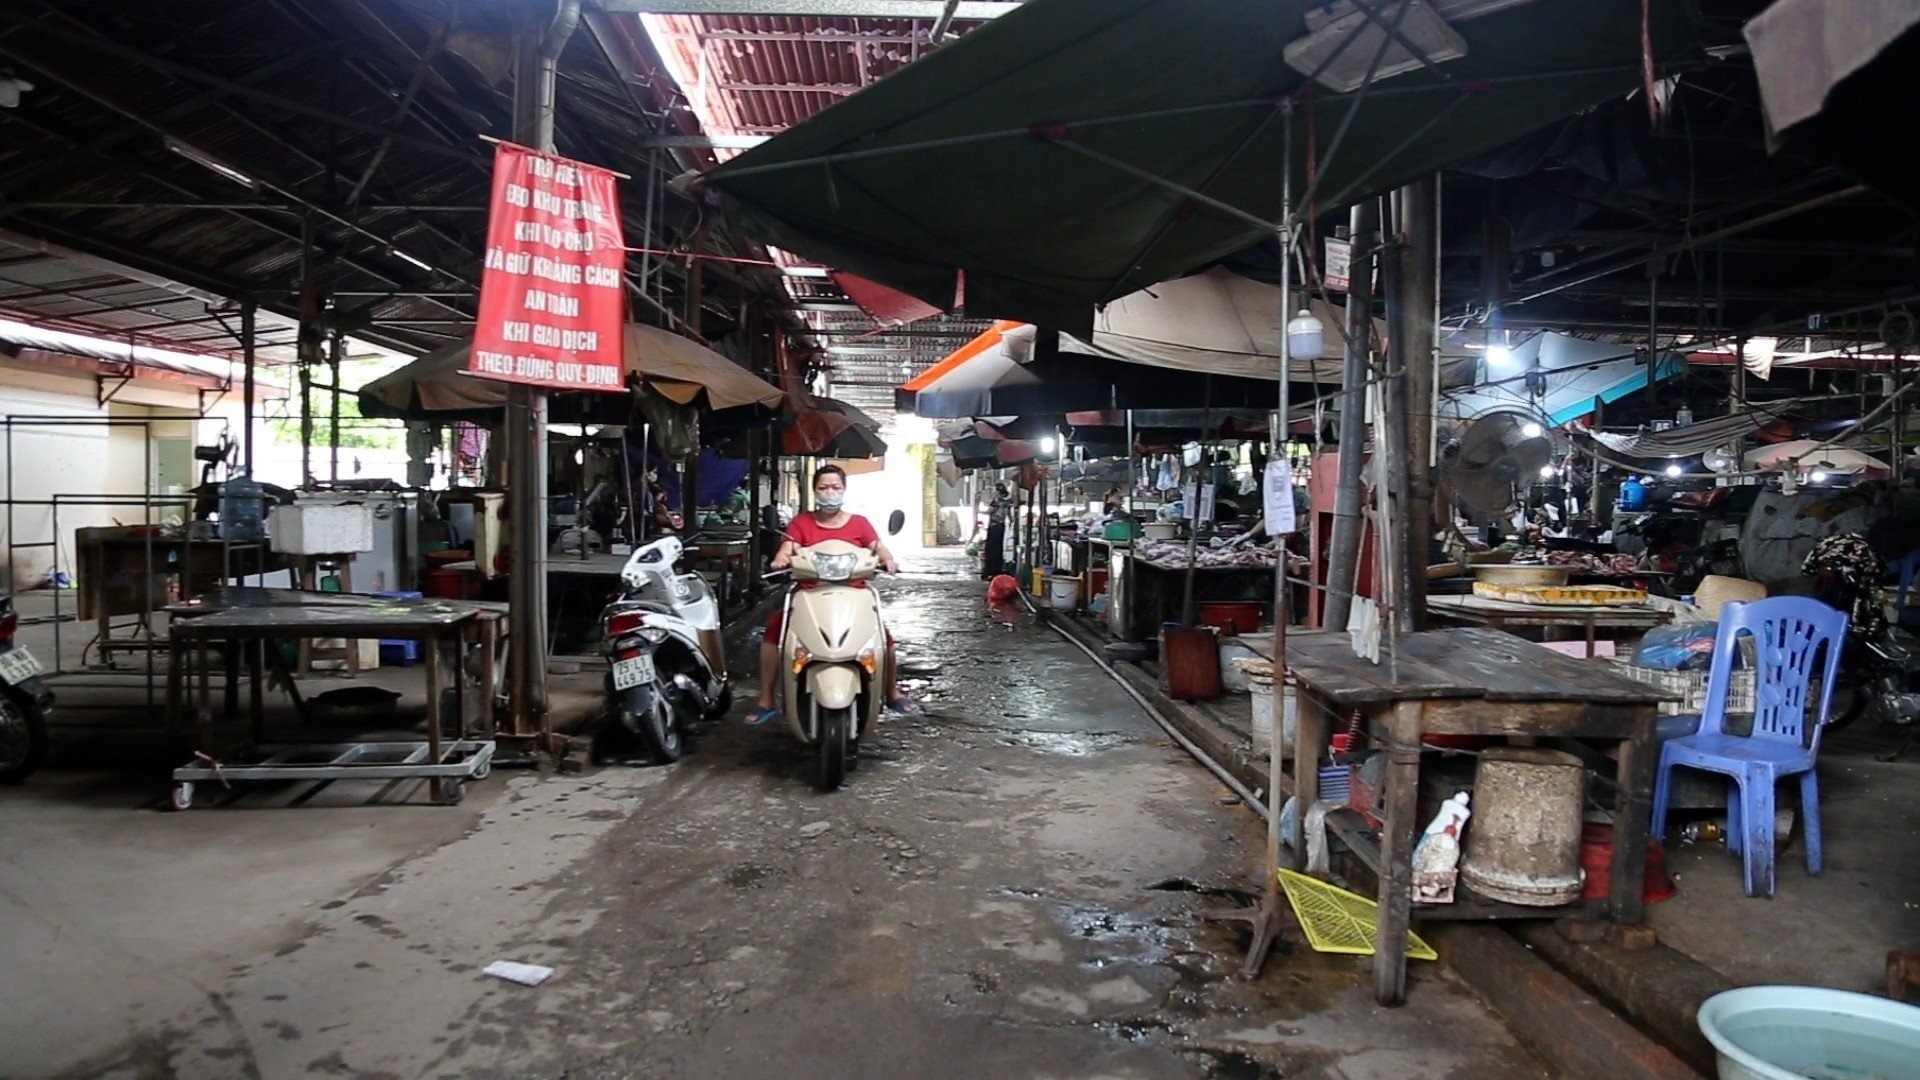 Mặc dù chợ Phú Đô đã được xây dựng khang trang nhưng tiểu thương vẫn phải vất vưởng bán hàng ở khu chợ tạm bợ liền kề. Ảnh: Minh Hà.